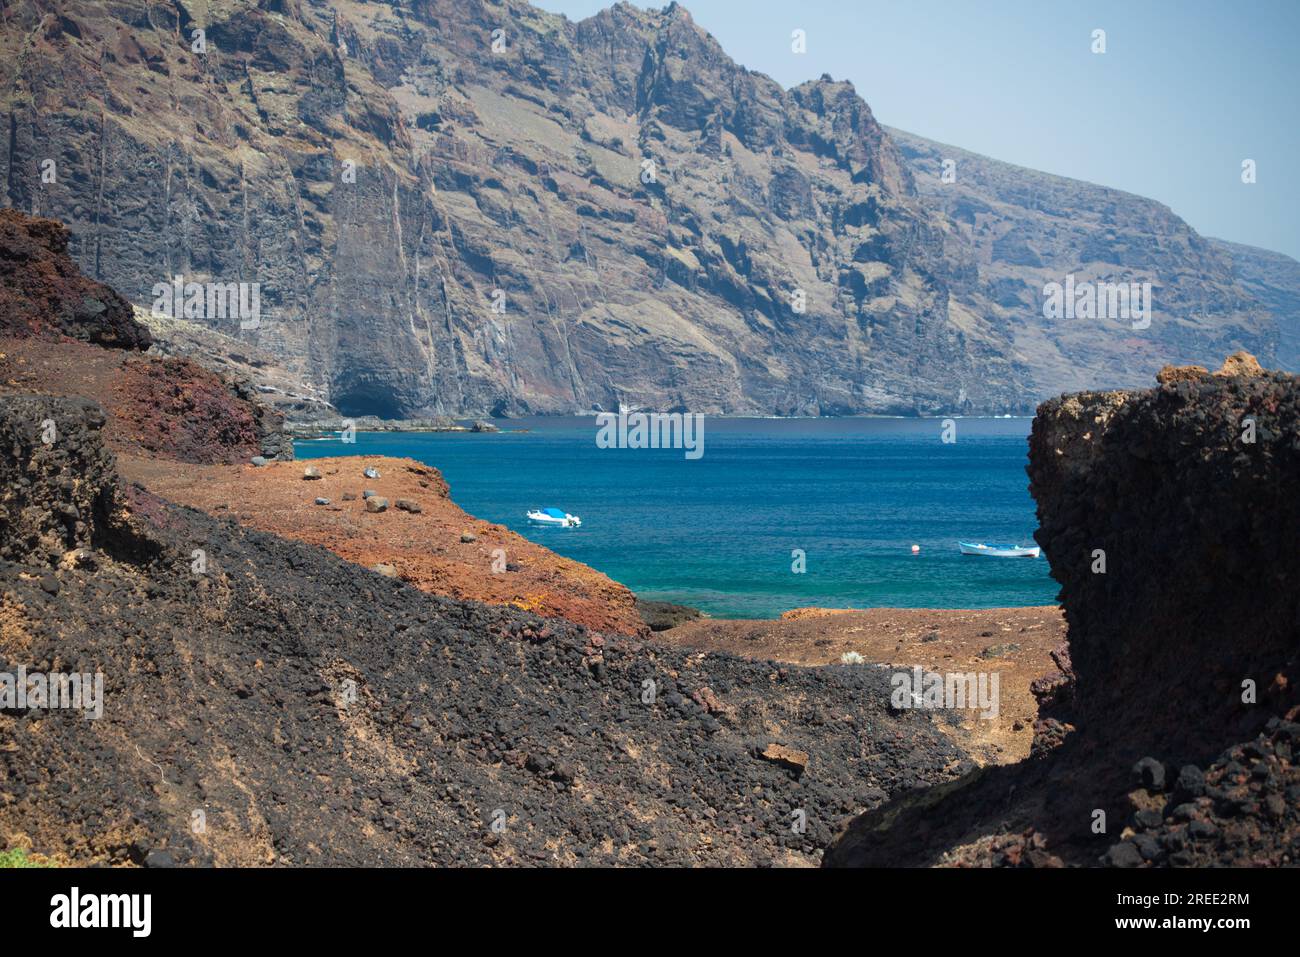 Scogliere di Los Gigantes da Punta de Teno, Tenerife, Isole Canarie. Acantilados de los Gigantes desde Punta de Teno. Foto Stock